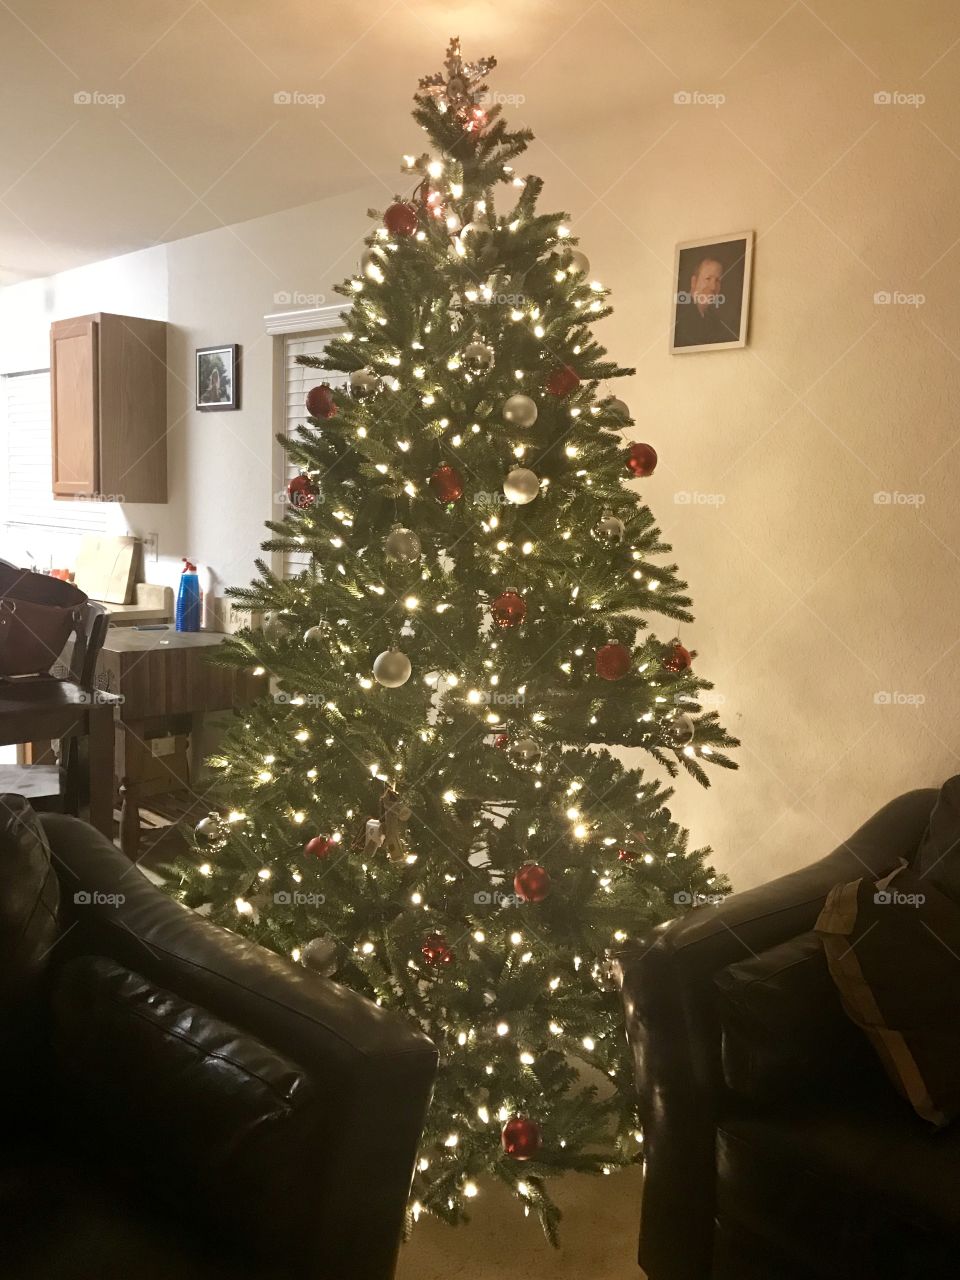 O Christmas tree 